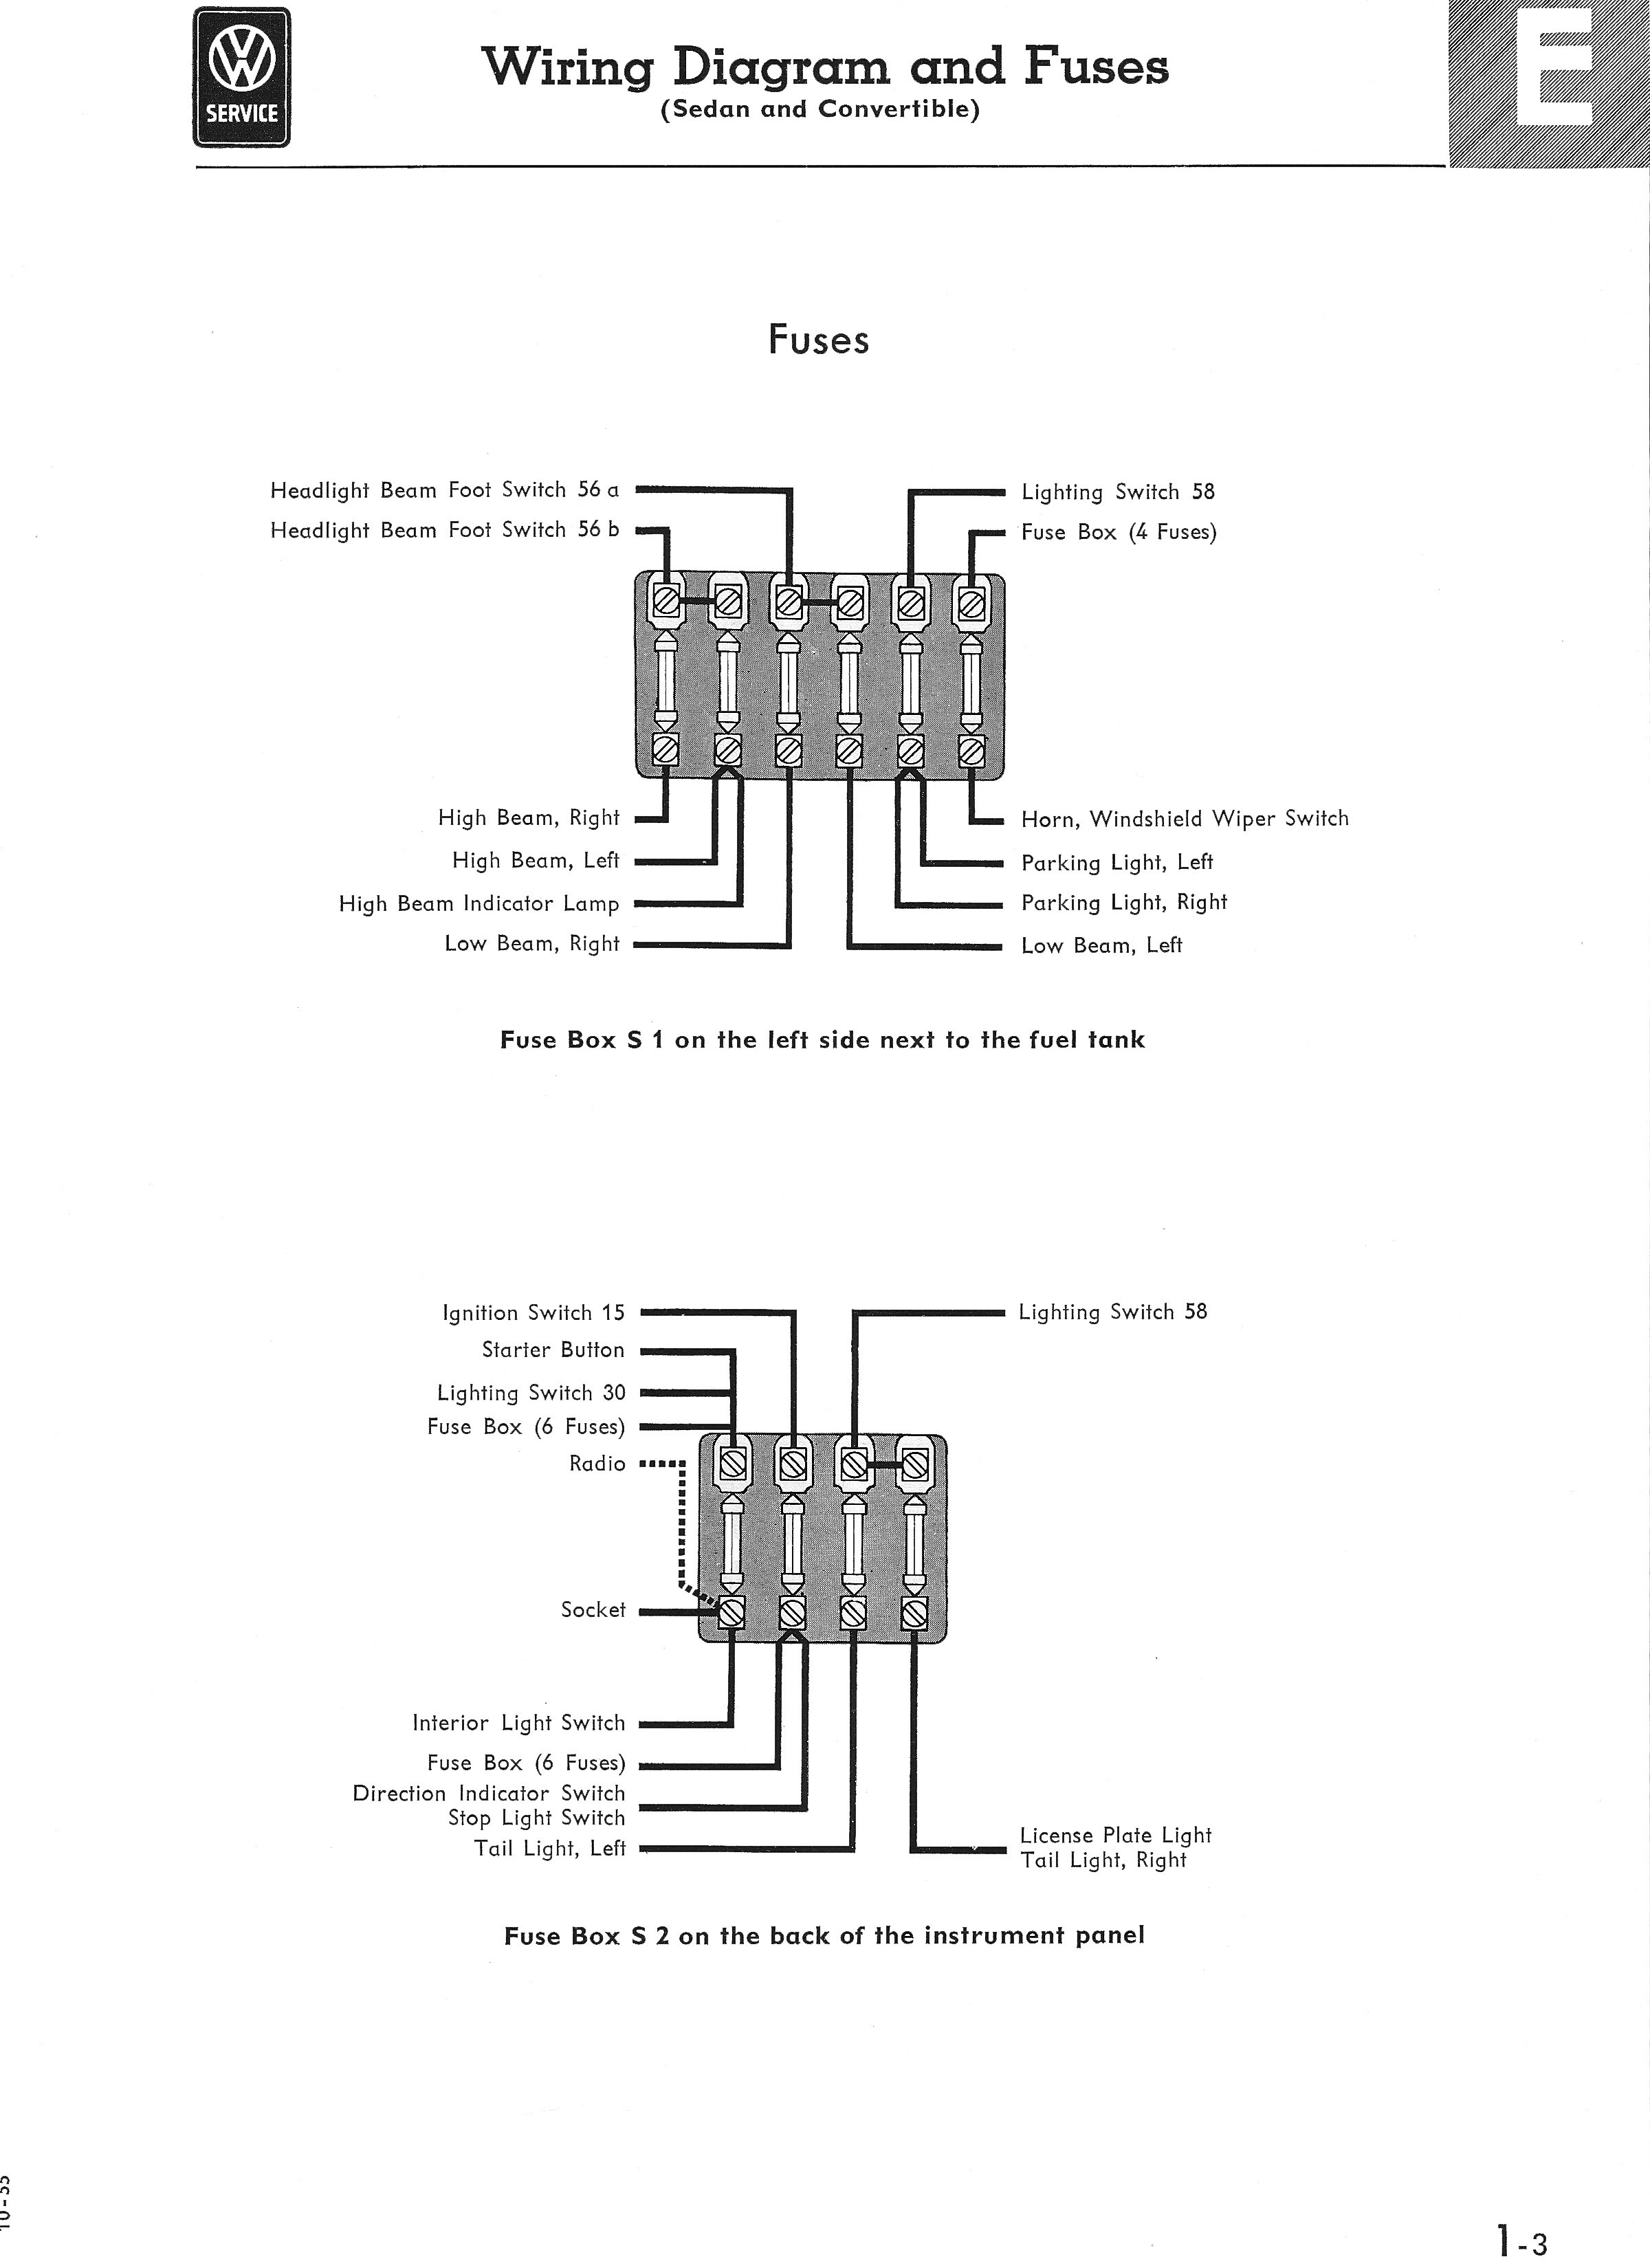 2000 Vw Passat Engine Diagram 1967 Vw Fuse Box Diagram Experts Wiring Diagram • Of 2000 Vw Passat Engine Diagram